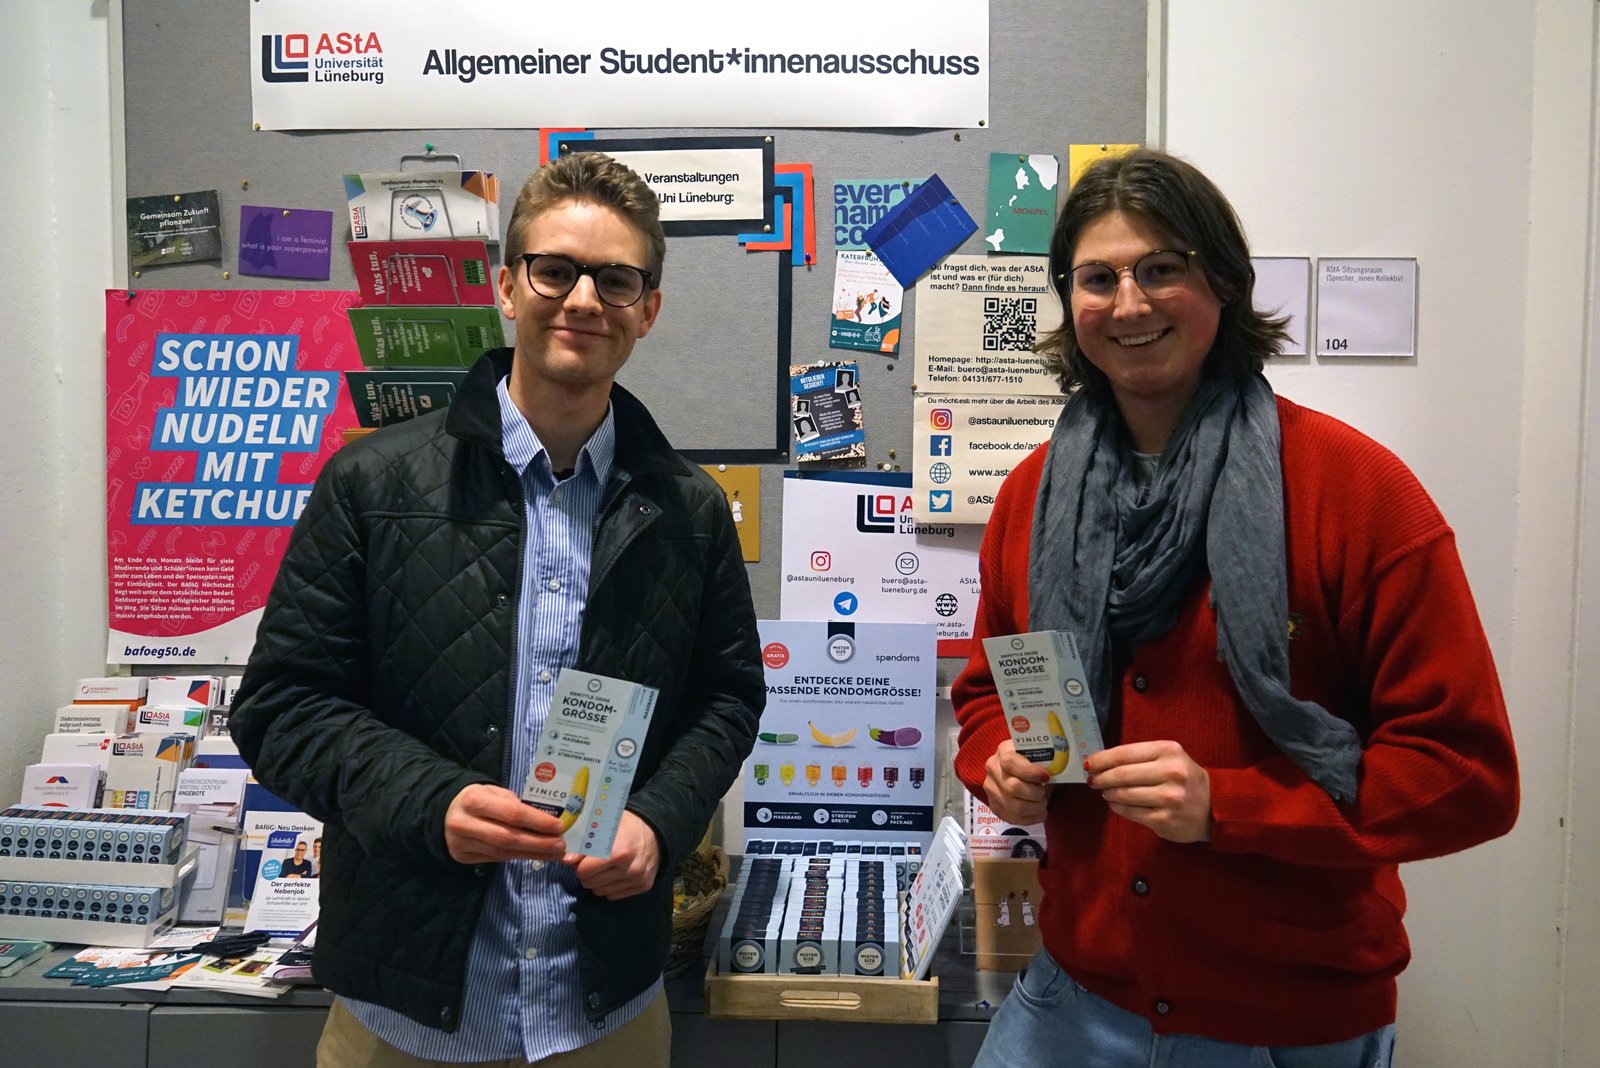 Luiss no Spondoms (pa kreisi) kopā ar Maksu no Līneburgas Universitātes AStA (pa labi) atver bezmaksas prezervatīvu dozatoru.